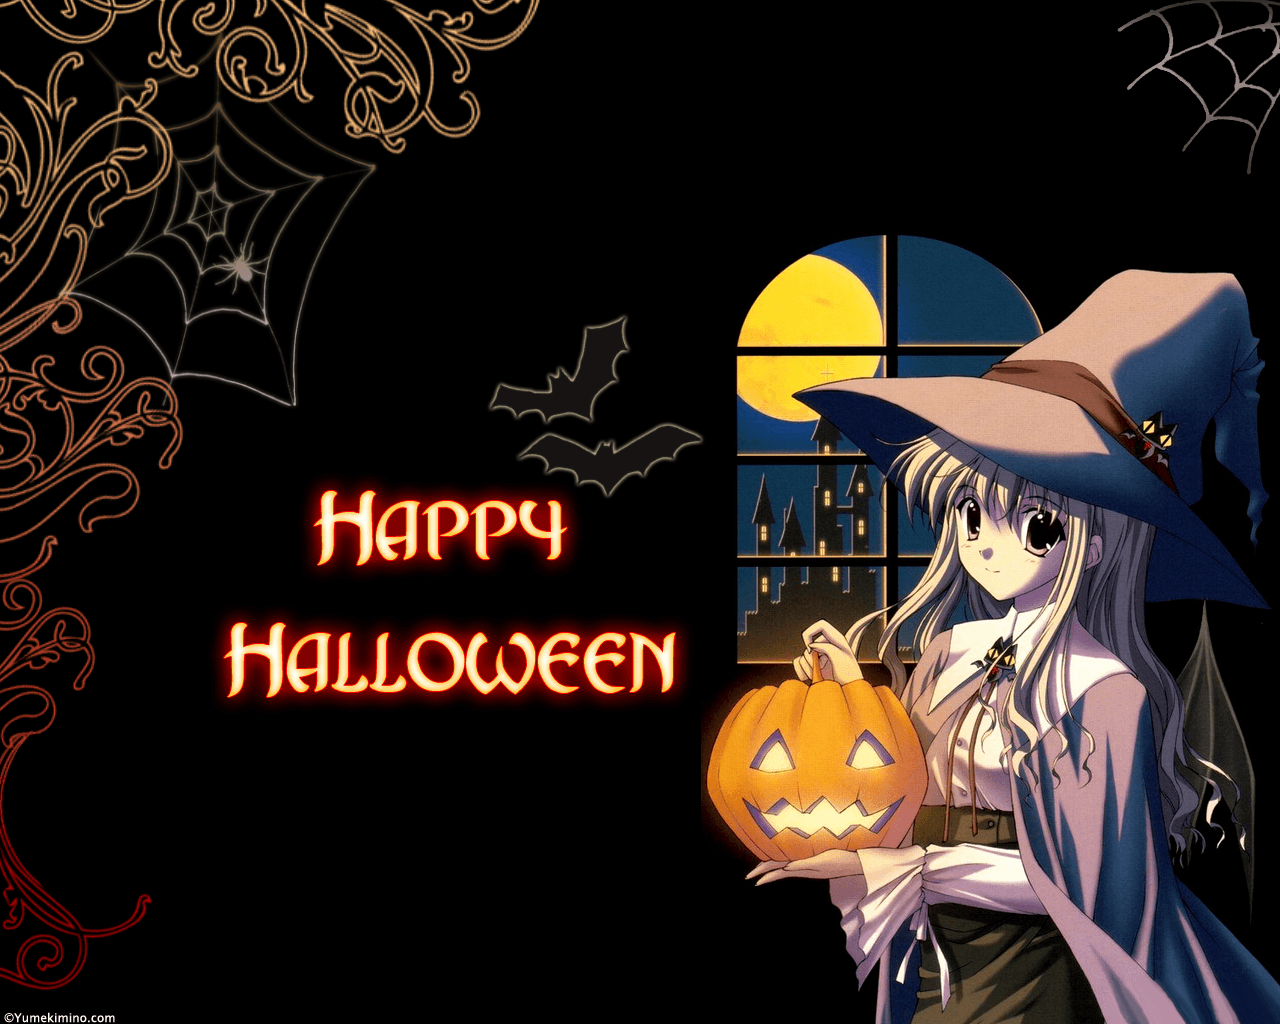 Halloween Anime Desktop Wallpapers - Wallpaper Cave